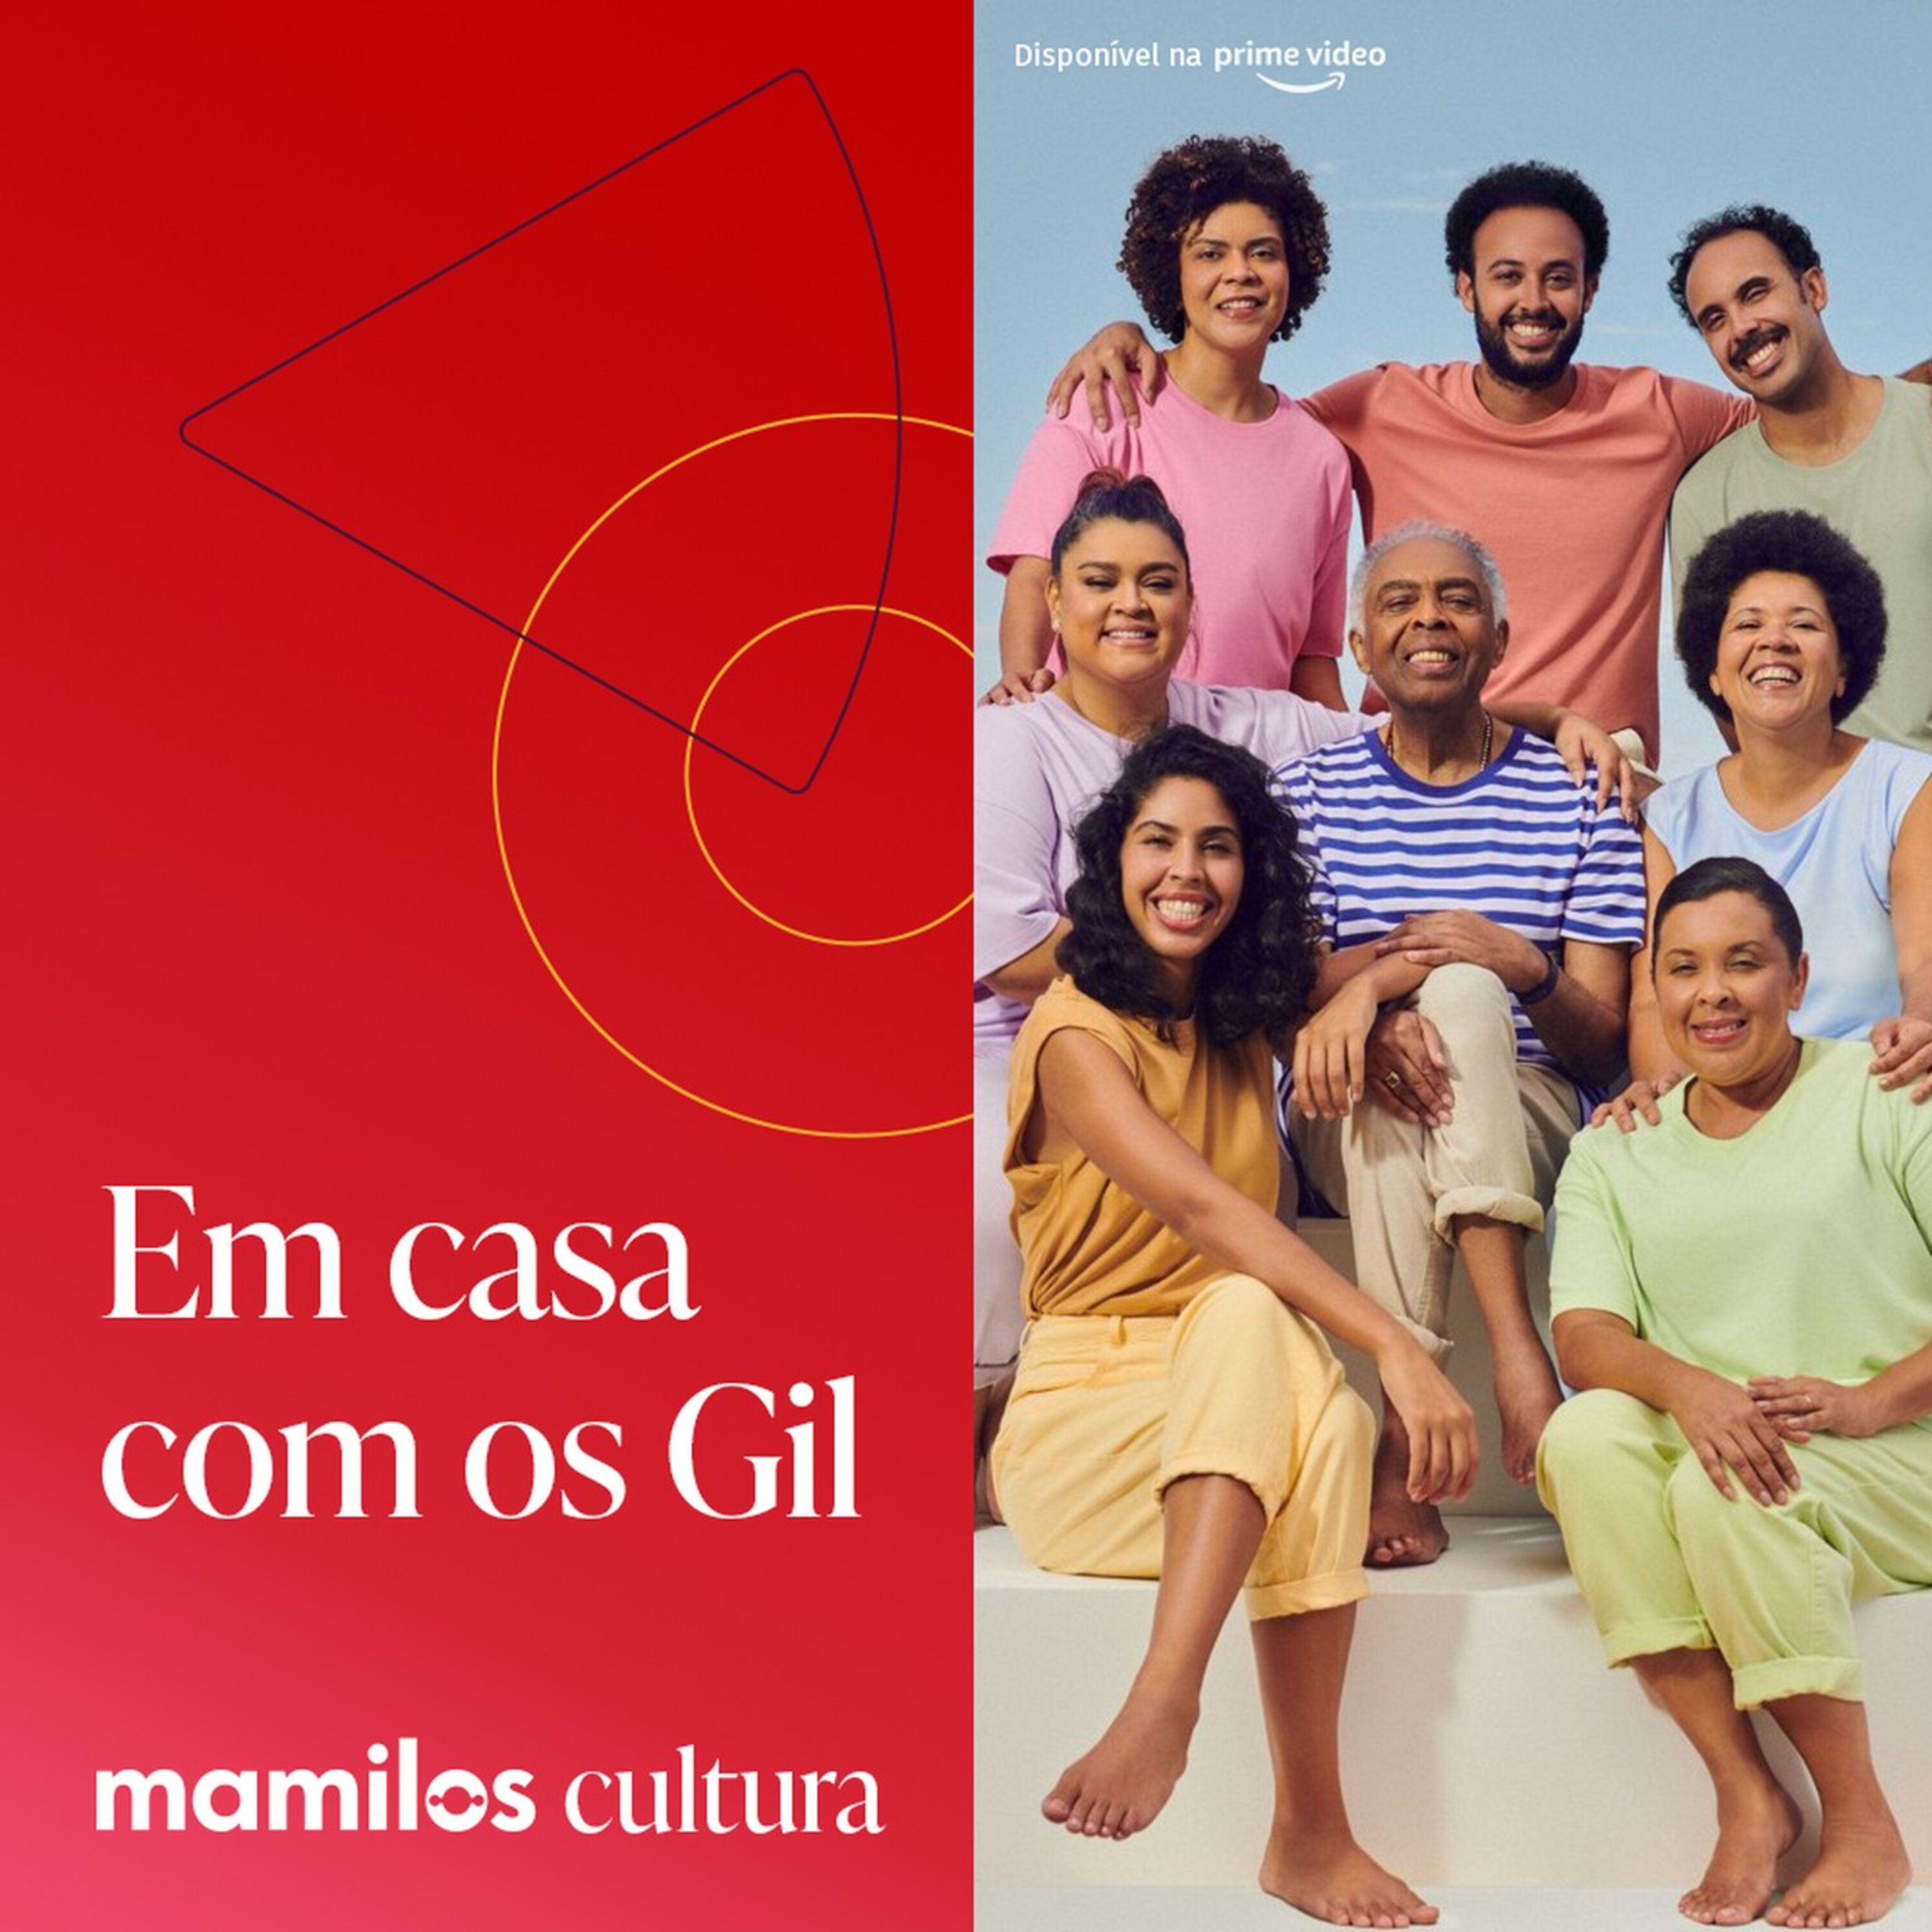 Mamilos Cultura 67: Série "Em Casa com os Gil" -  colcha de retalhos afetivos